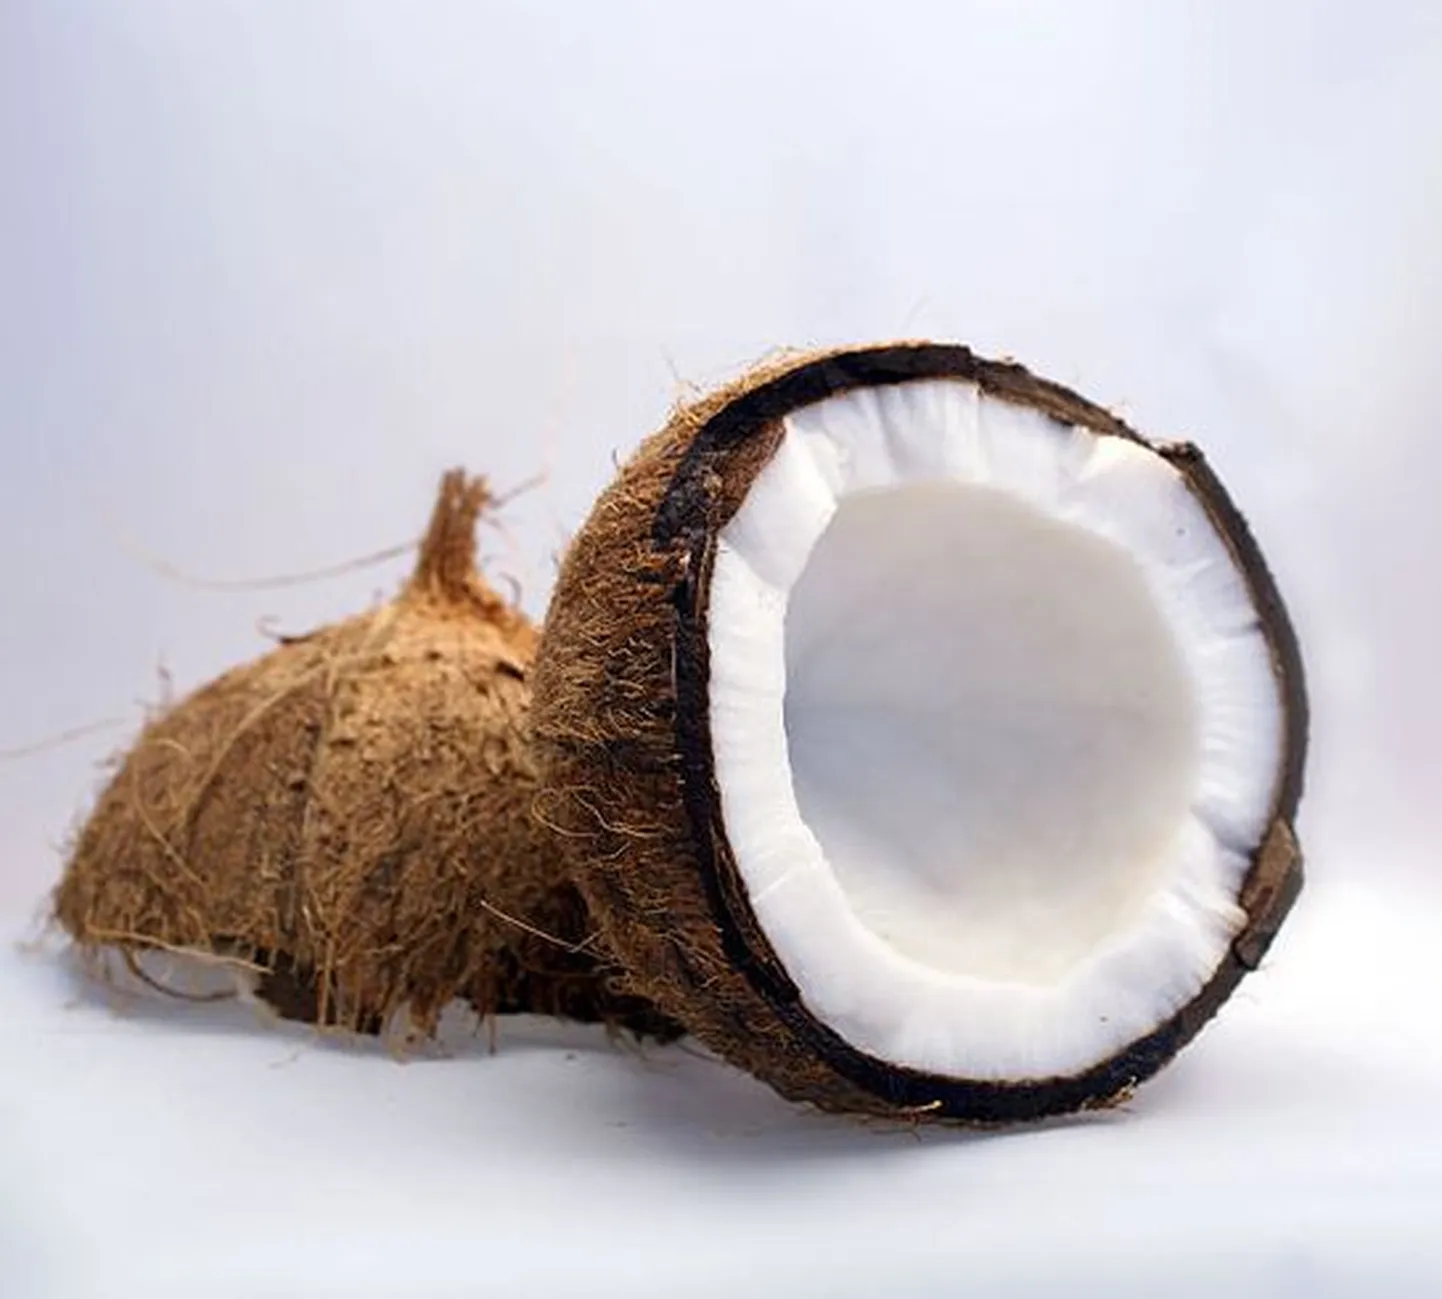 Kuidas lõhkuda nimetissõrmega neli kookospähklit?